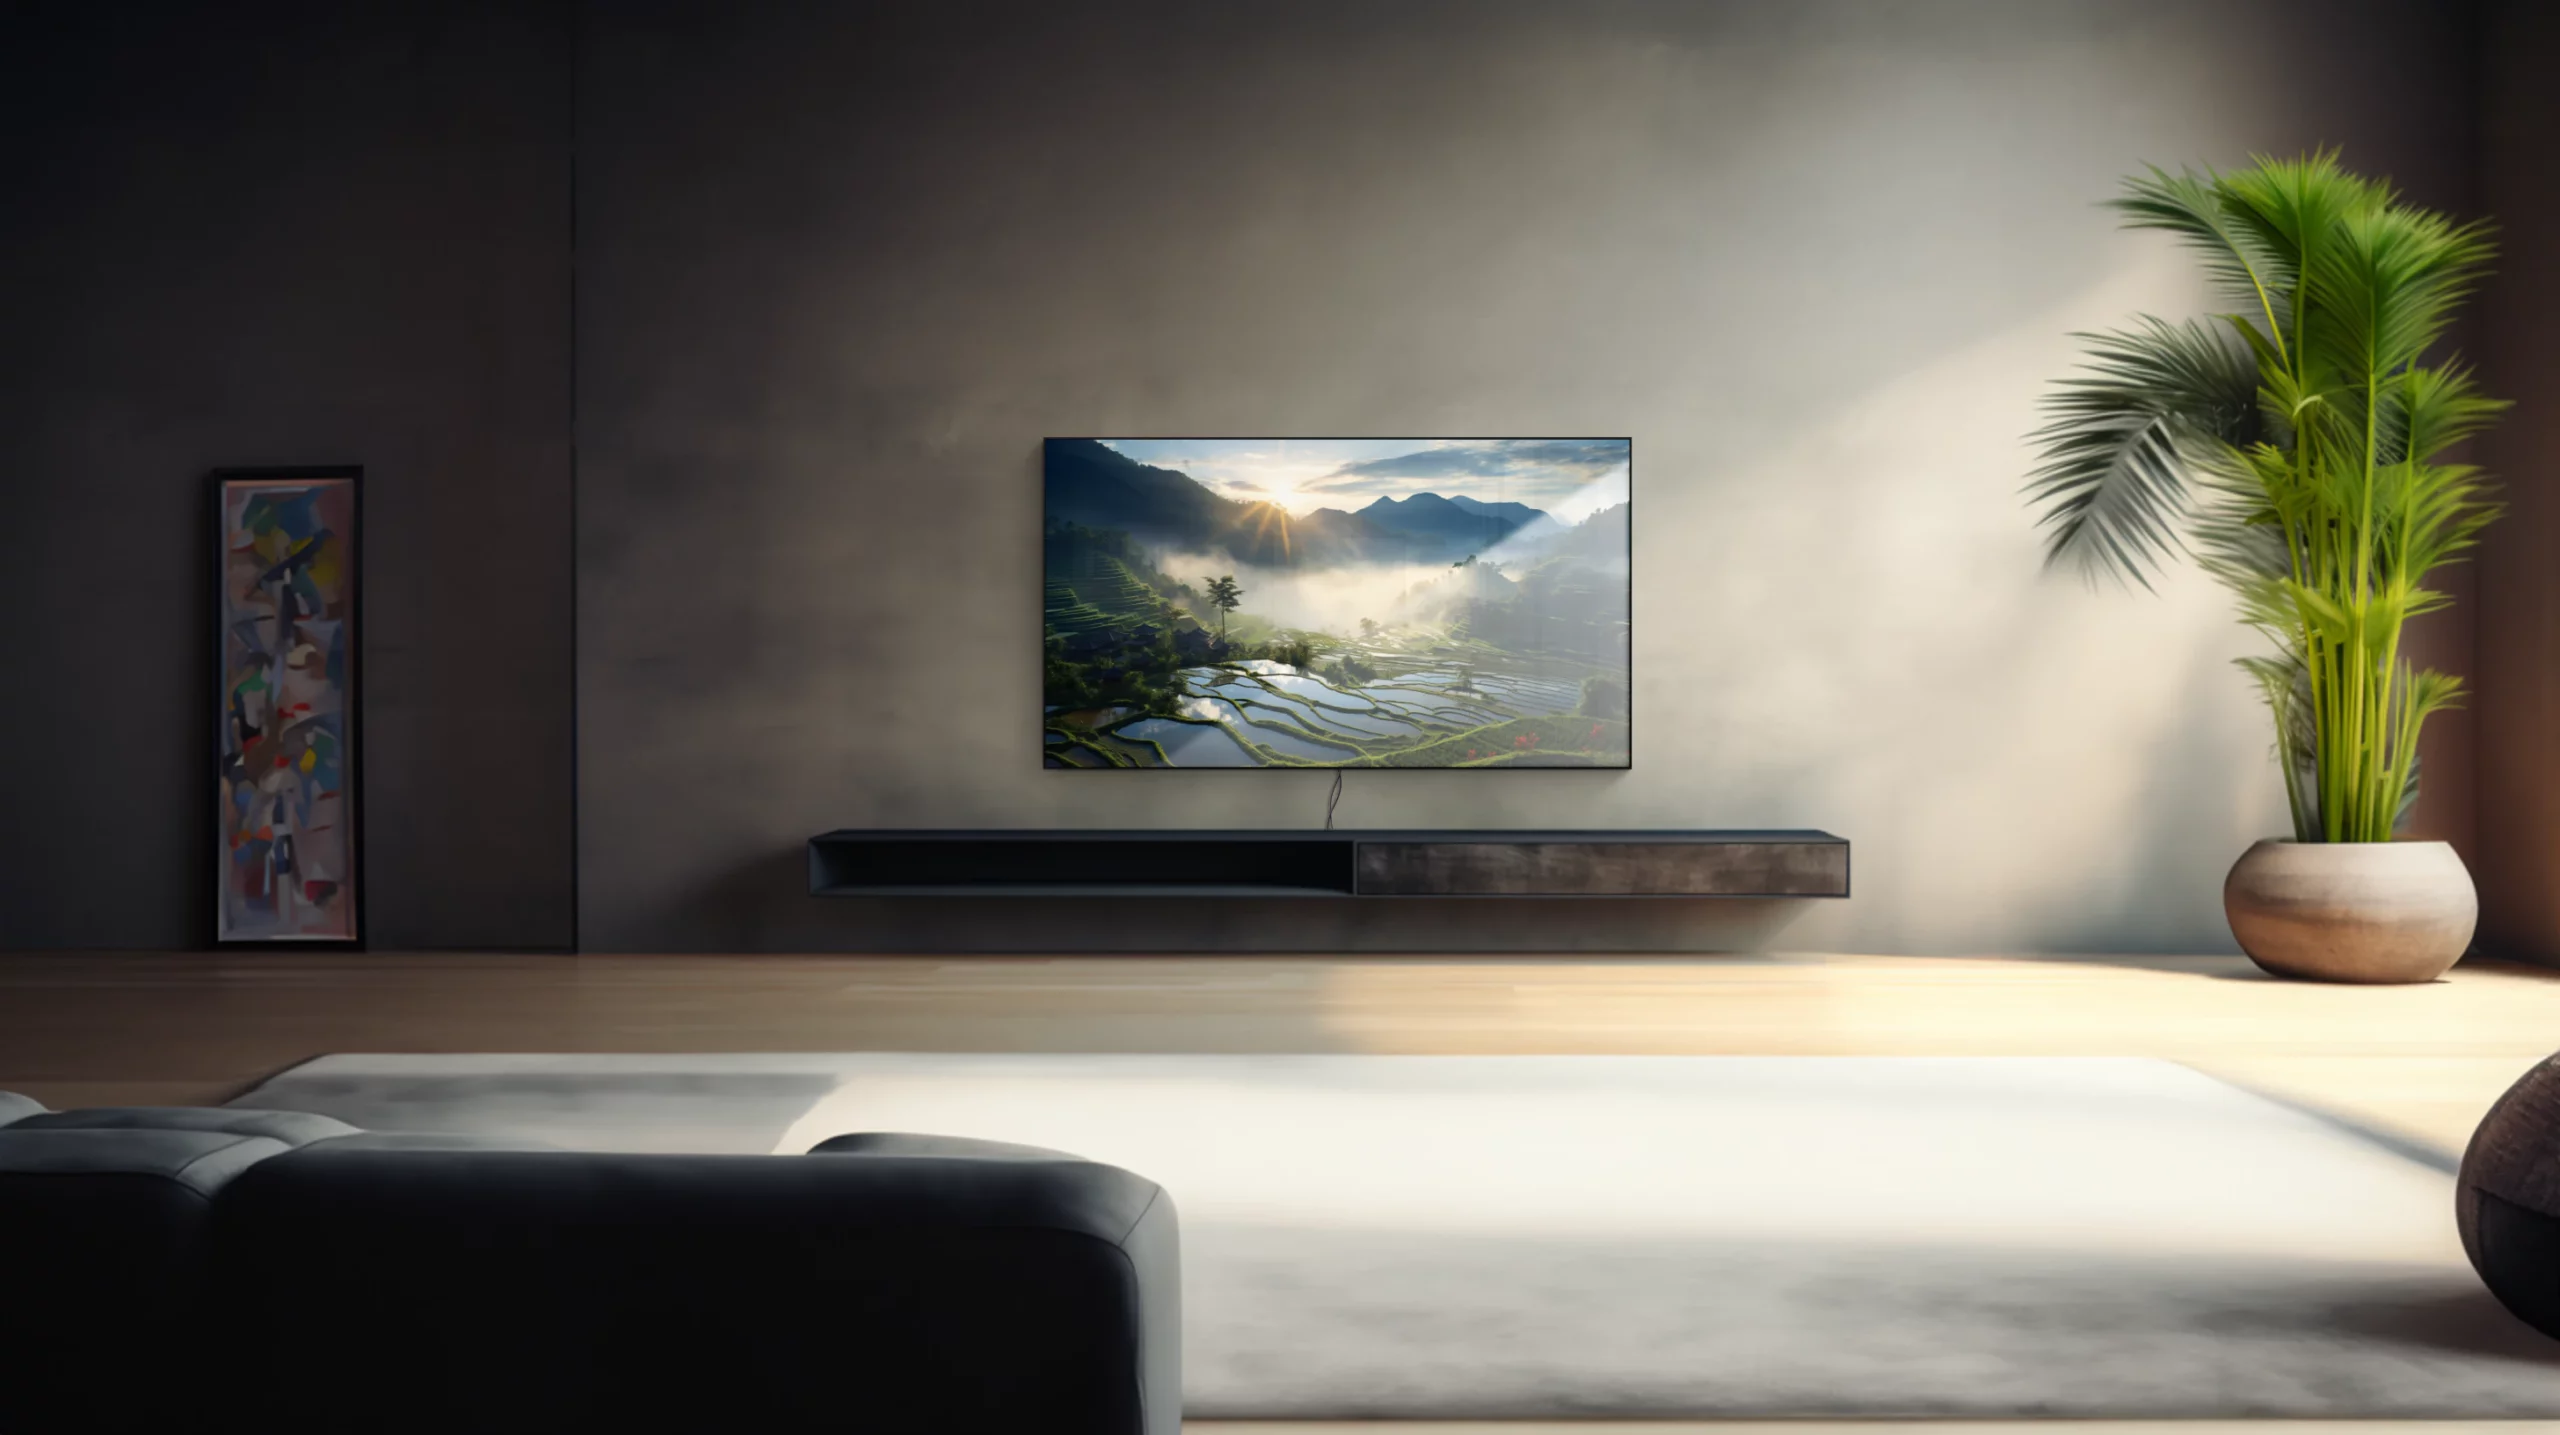 Ein 85 Zoll Fernseher in einem modernen Wohnzimmer. Auf dem Display ist zu erkennen, dass die Oberfläche vom Fernseher spiegelt. Der Fernseher ist an der Wand montiert und Kabel sind unterhalb des Gerätes zu sehen.